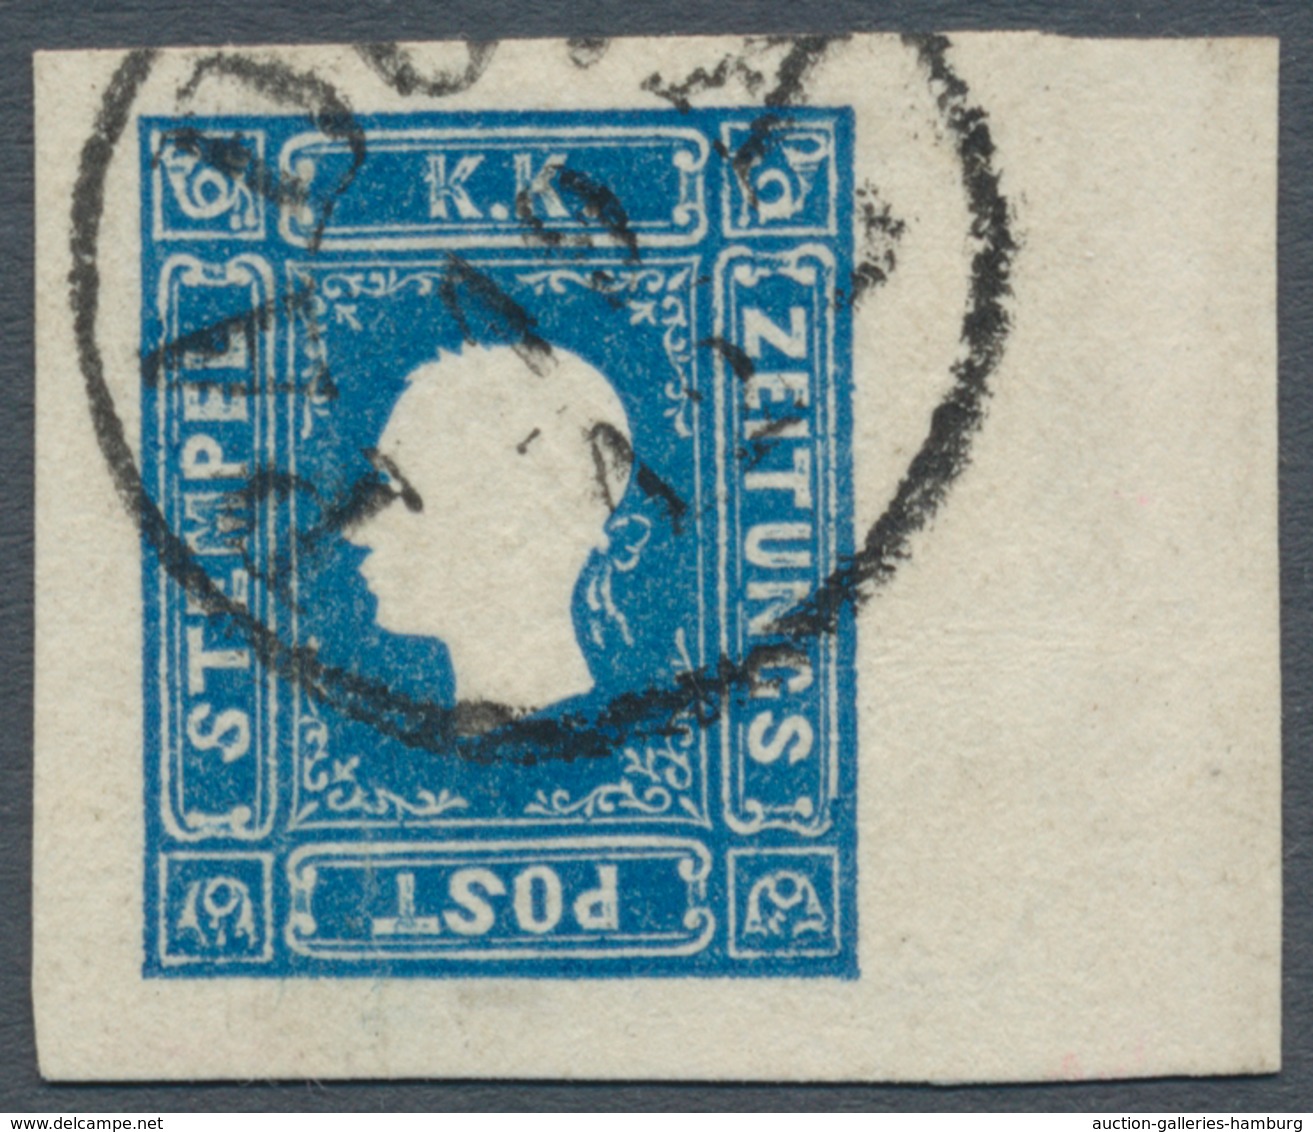 Österreich: 1858, (1,05 Kreuzer/Soldi) Dunkelblau Zeitungsmarke, Type I, Allseits überrandiges Recht - Ungebraucht